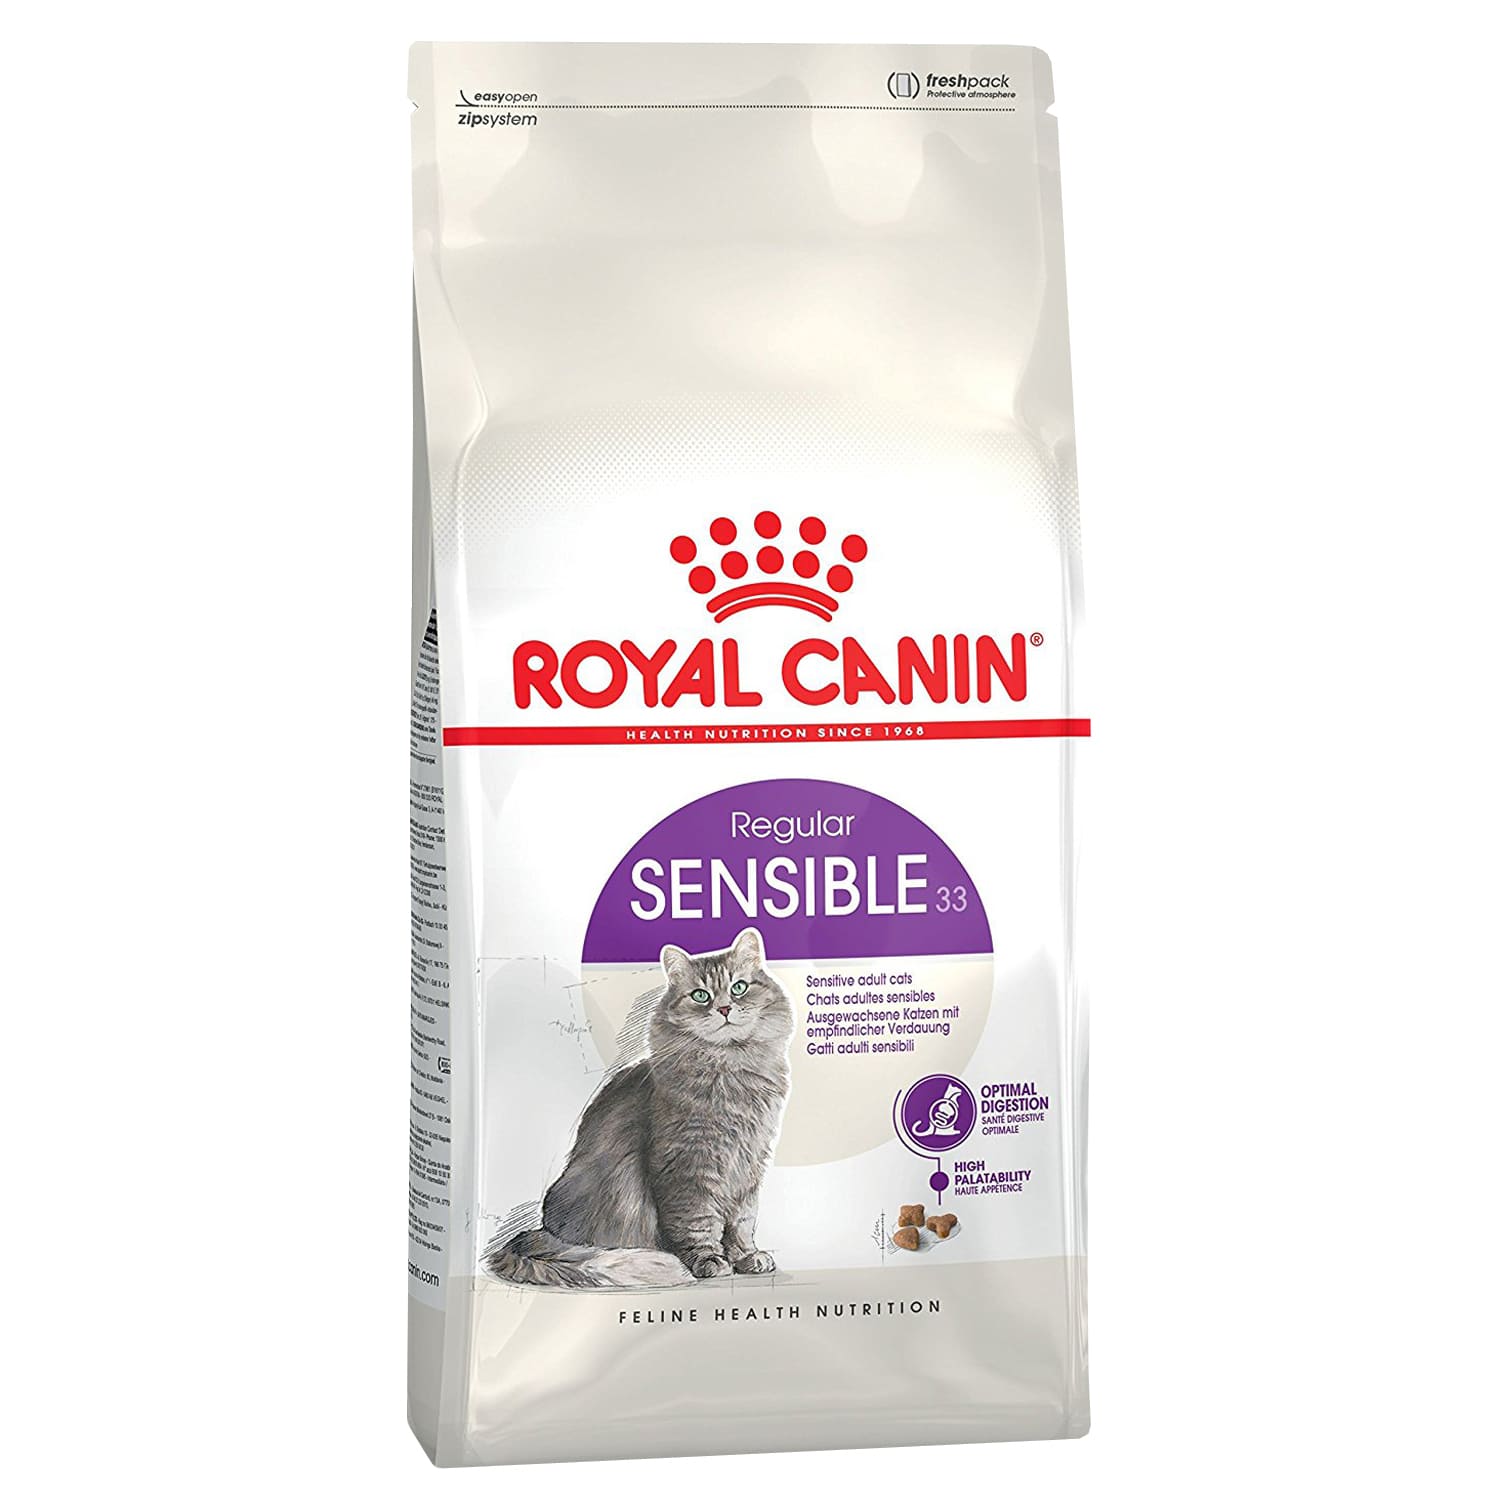 Royal Canin Sensible 33 Корм для кошек с чувствительной пищеварительной системой